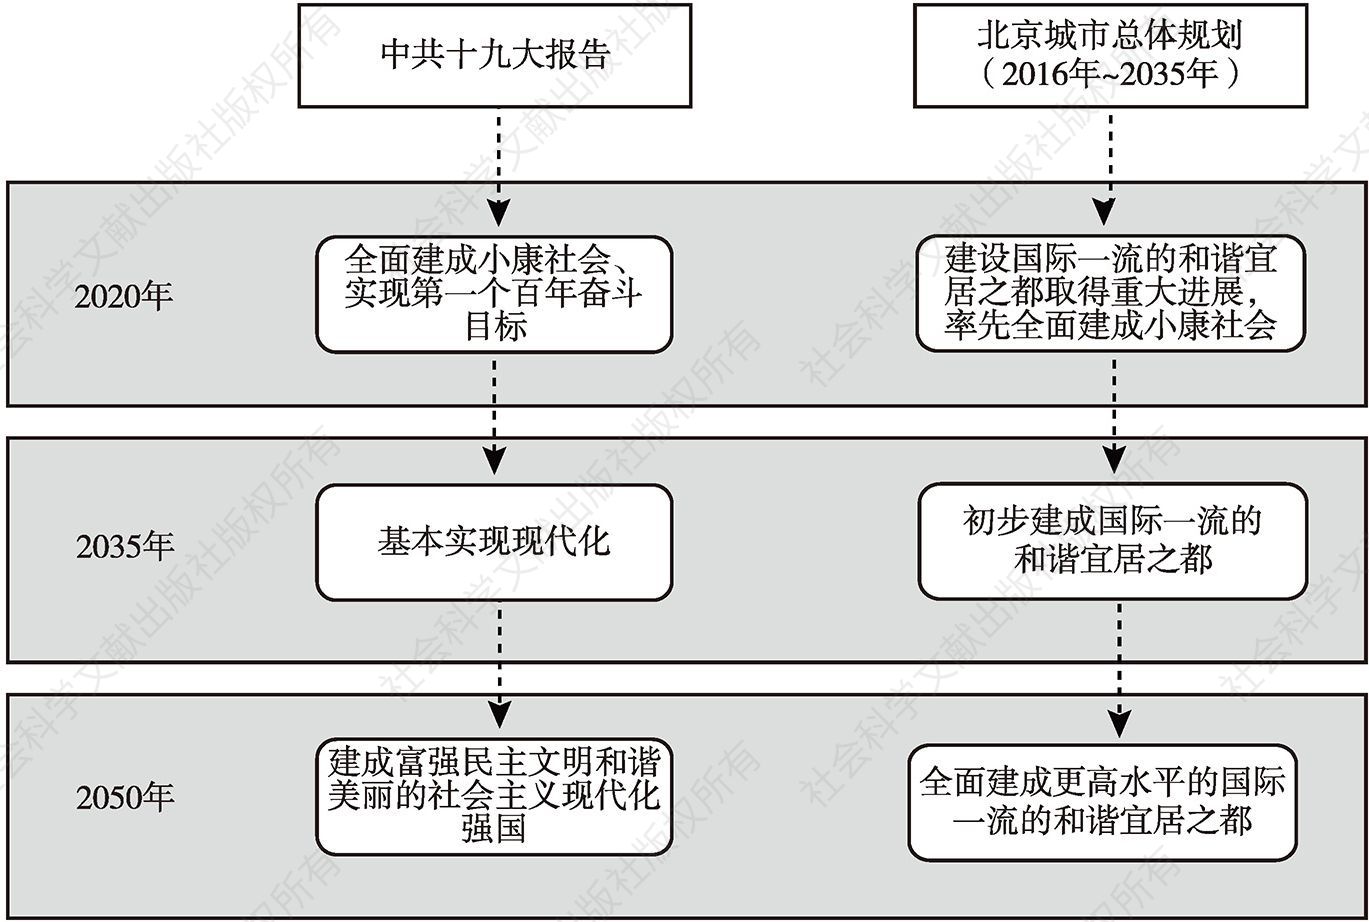 图1 中共十九大报告和北京城市总体规划“三步走”目标